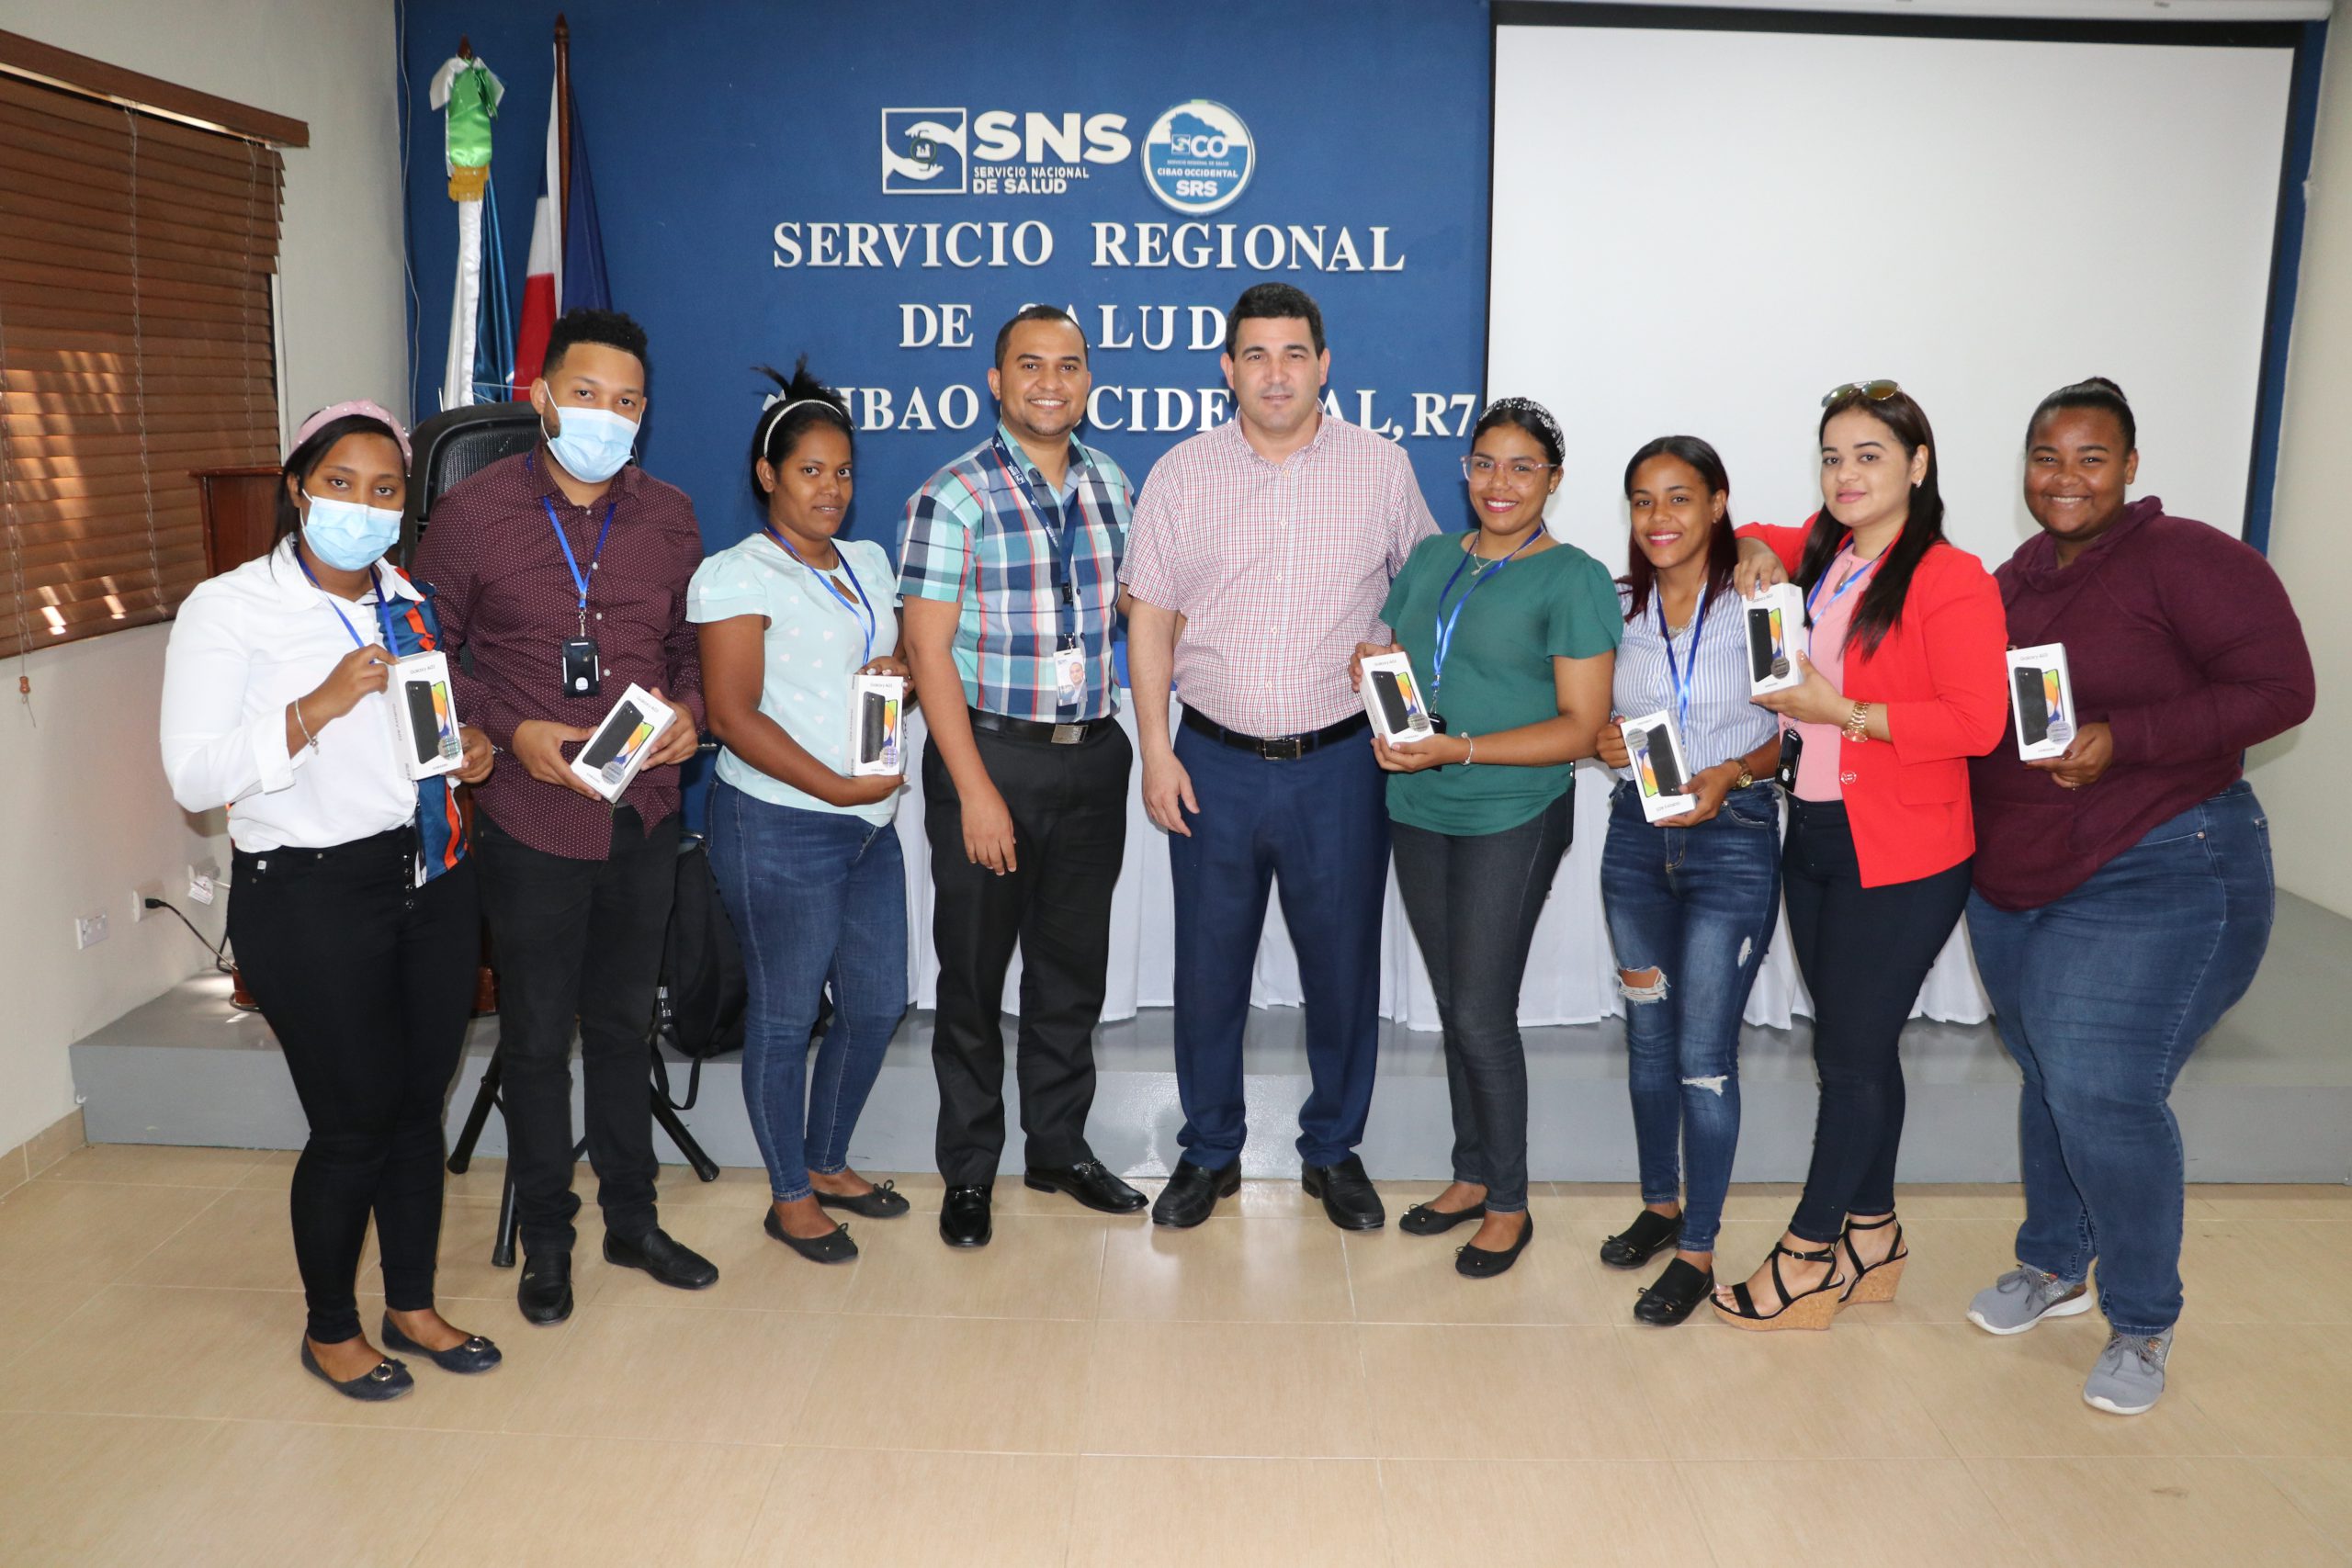 SRSCO-SNS, Entrega de Equipos Móviles al Personal Programa 42 VIH de la Región Cibao Occidental.